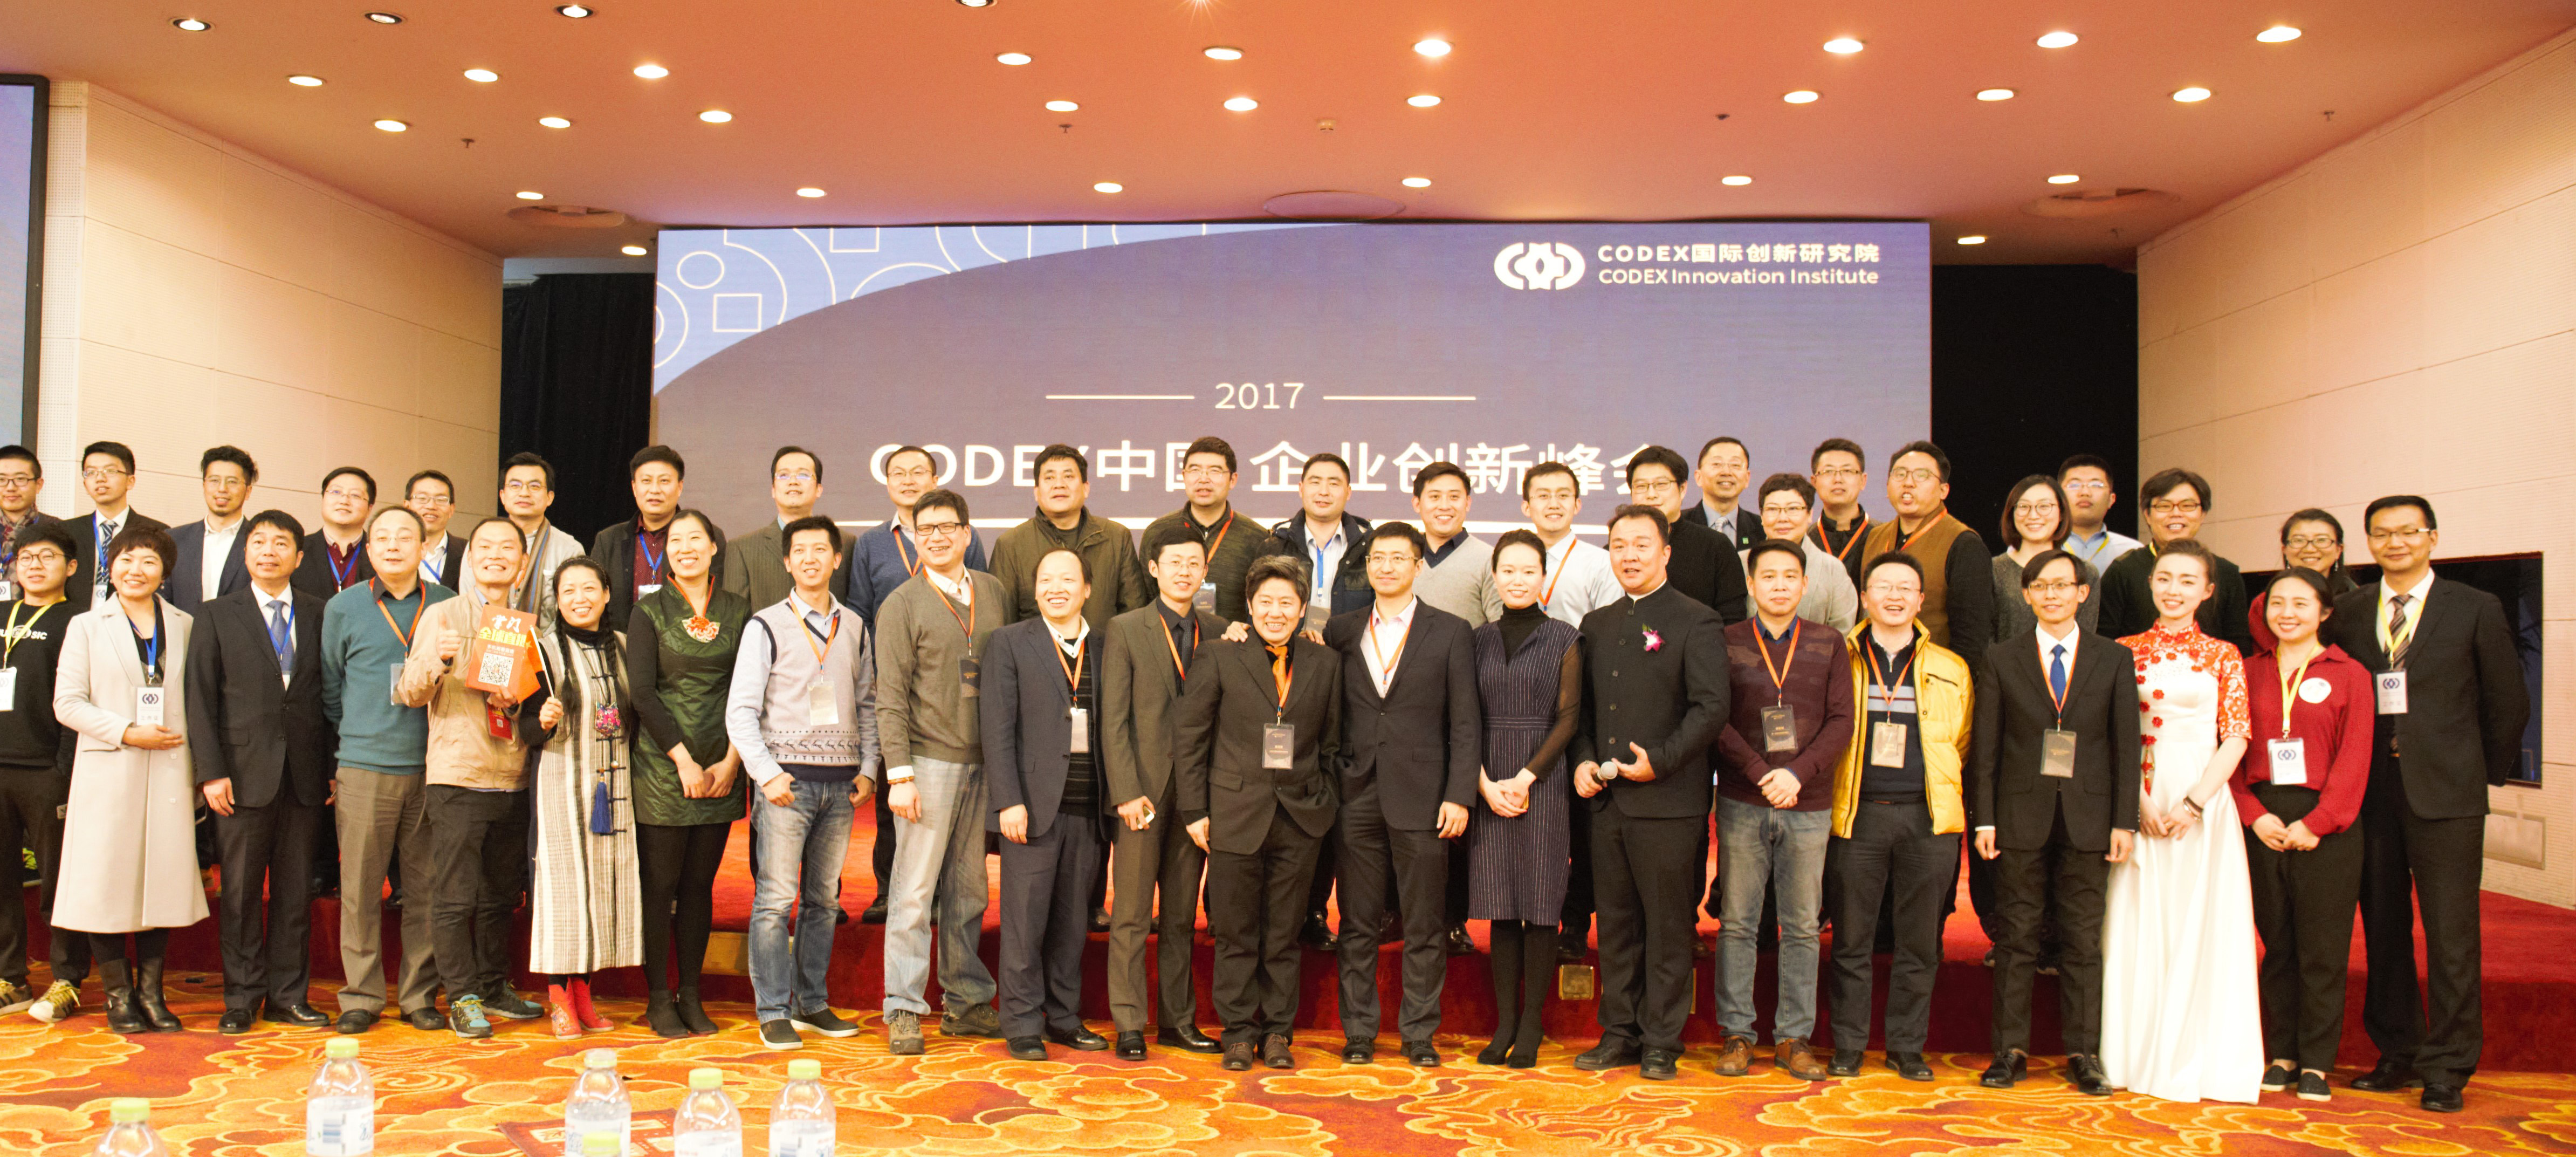 CODEX企业峰会